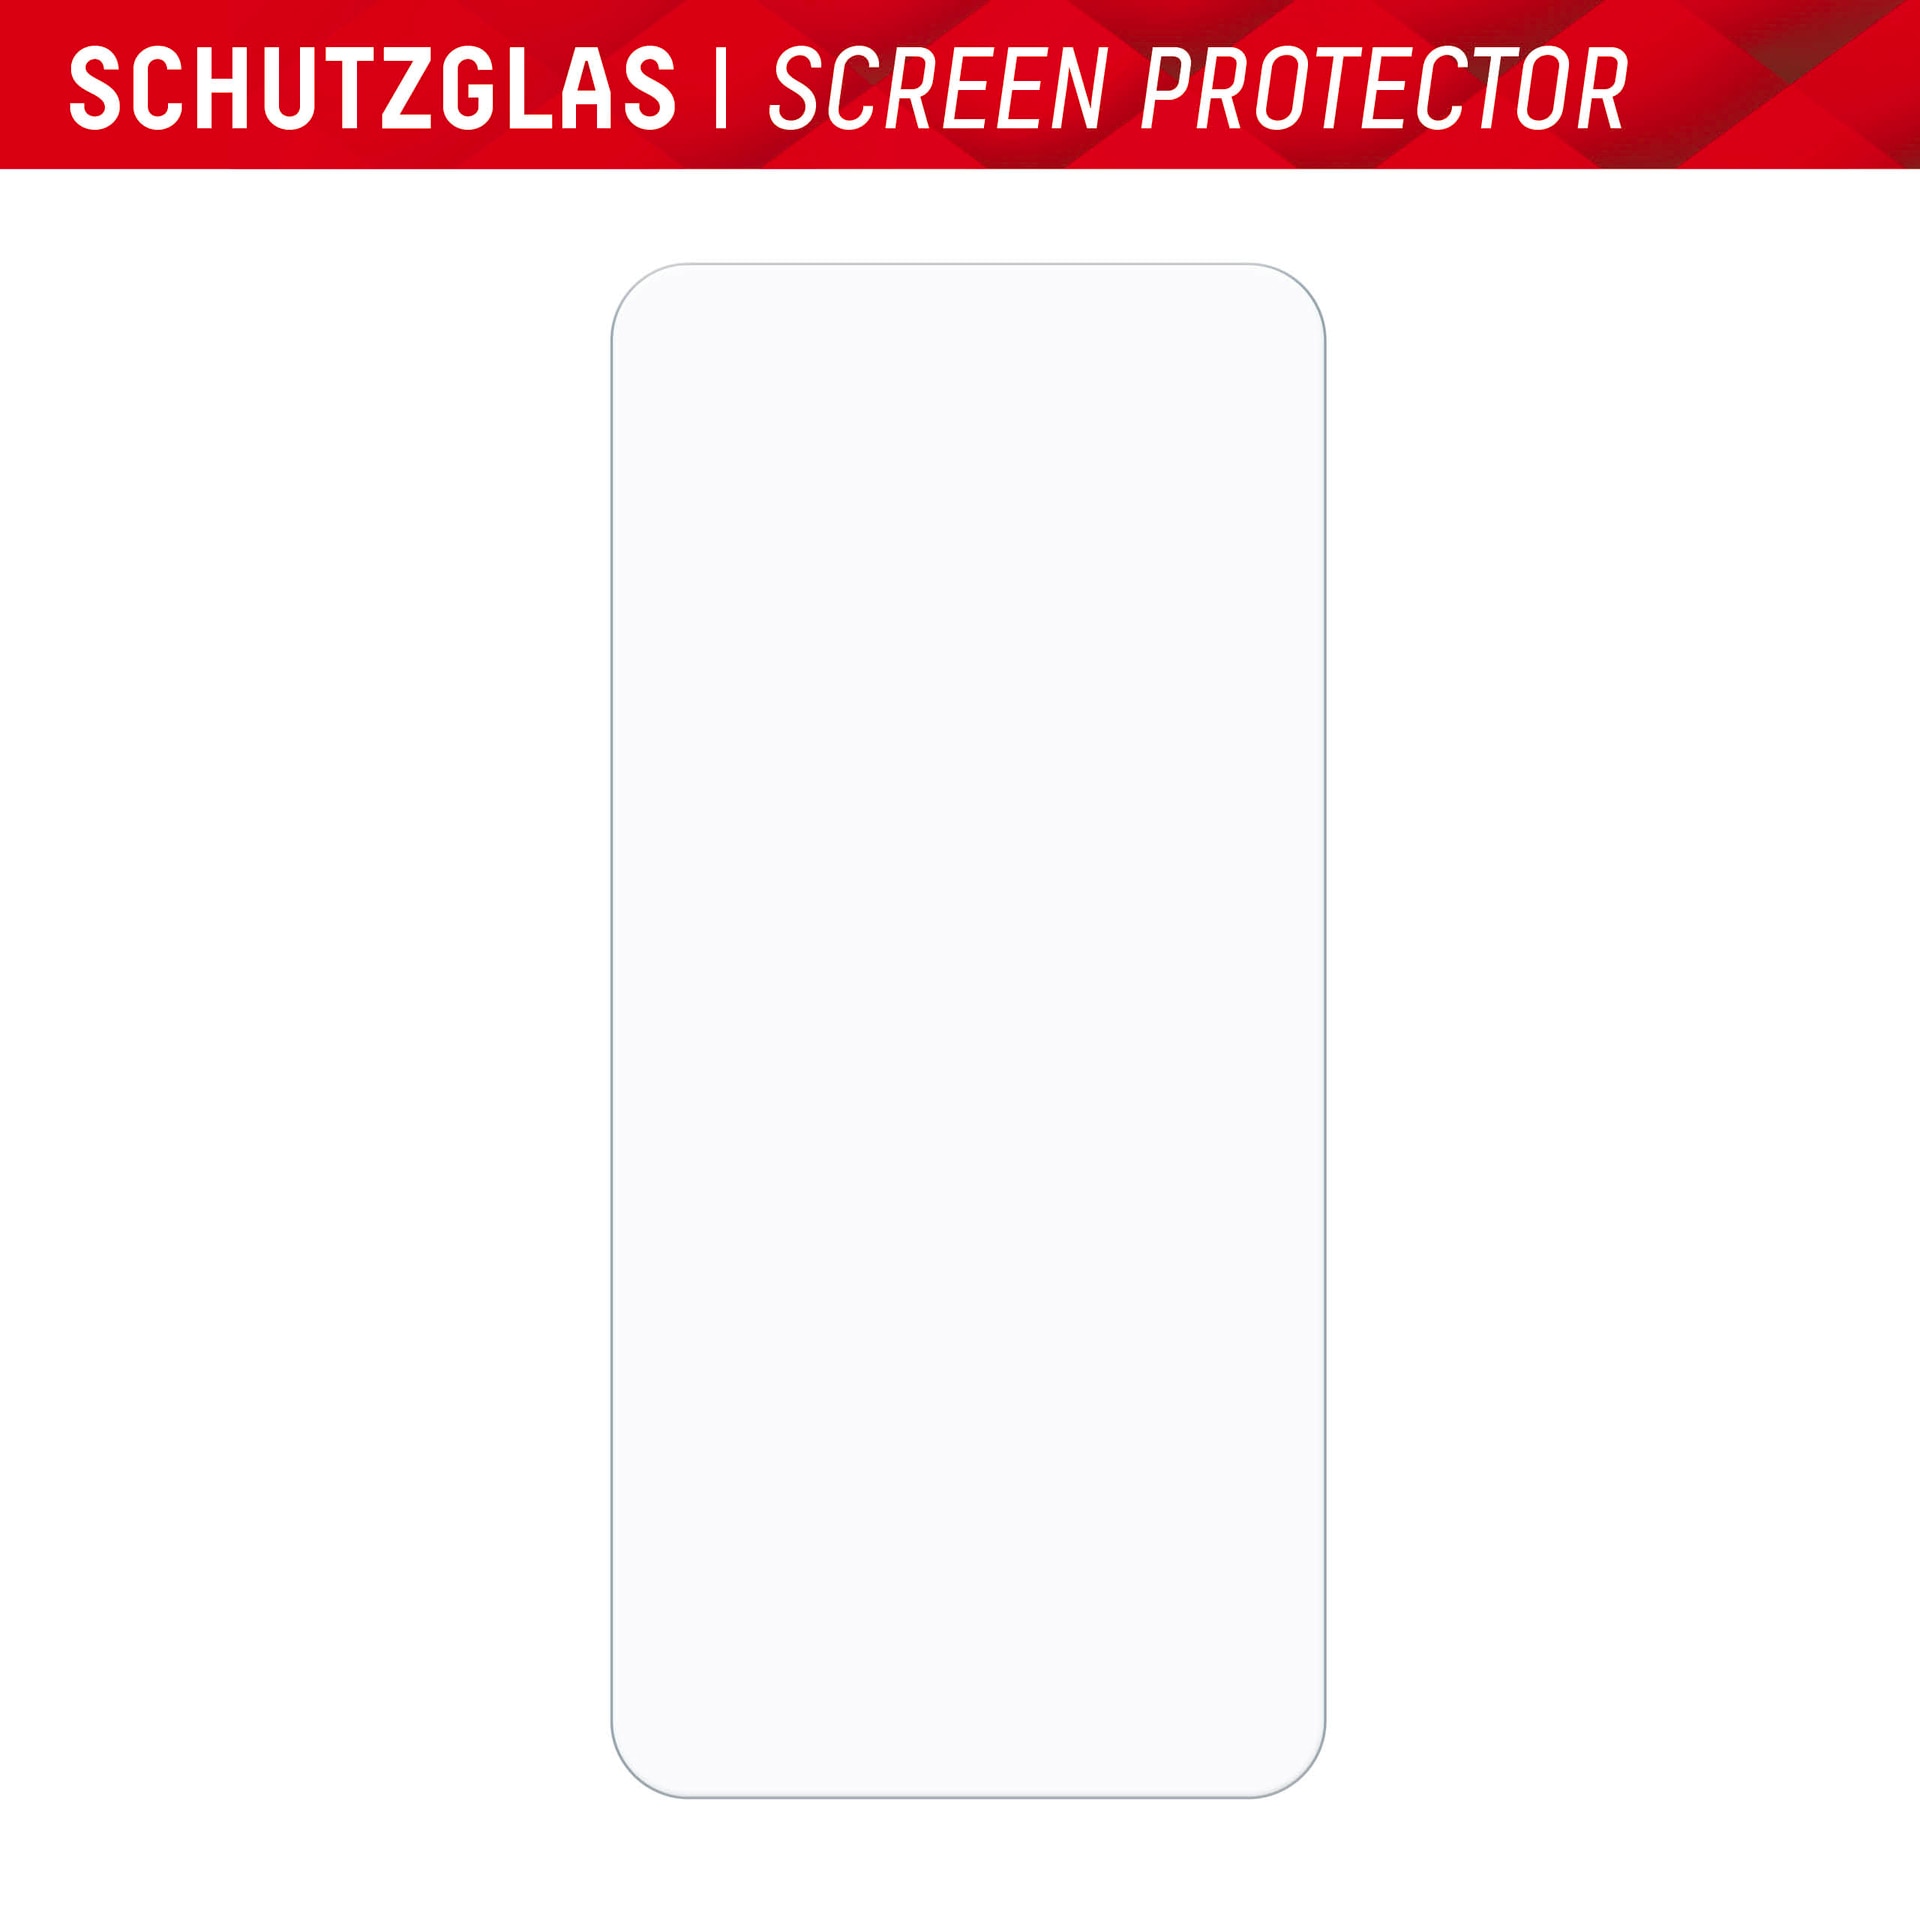 Displex Displayschutzglas »Smart Glass«, für Samsung Galaxy A35-Samsung Galaxy A55 5G, (1 St.), Bildschirmschutz, Displayschutzfolie,Einfach anbringen,kratz-&stoßfest